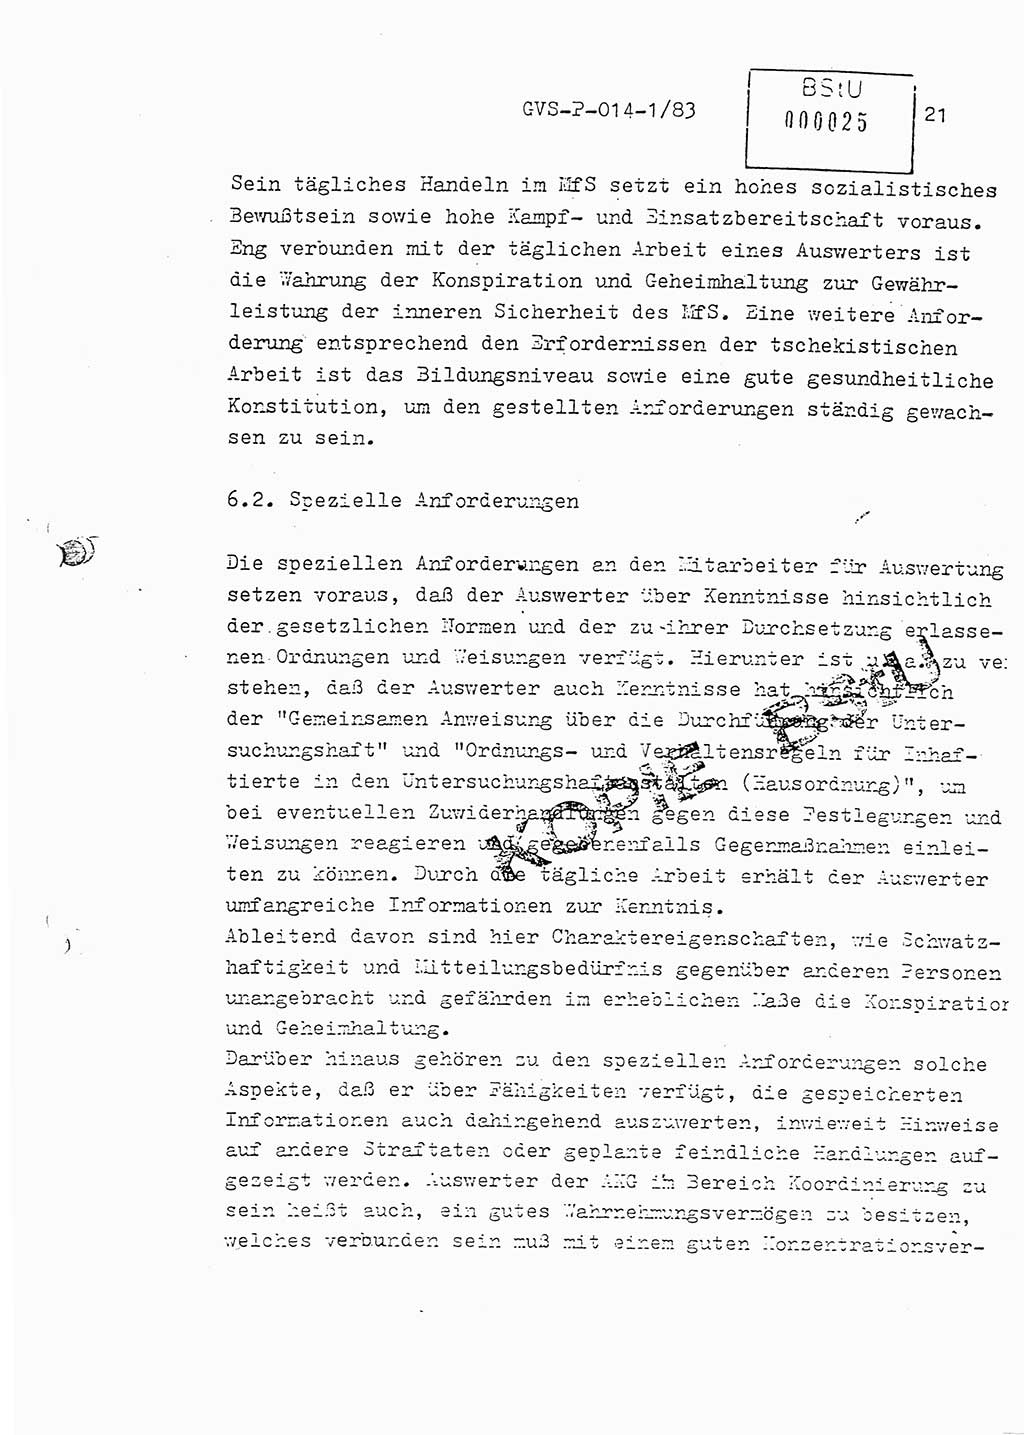 Fachschulabschlußarbeit Leutnant Dirk Autentrieb (HA Ⅸ/AKG), Ministerium für Staatssicherheit (MfS) [Deutsche Demokratische Republik (DDR)], Hauptabteilung (HA) Ⅸ, Geheime Verschlußsache (GVS) P-014-1/83, Berlin 1983, Blatt 21 (FS-Abschl.-Arb. MfS DDR HA Ⅸ GVS P-014-1/83 1983, Bl. 21)